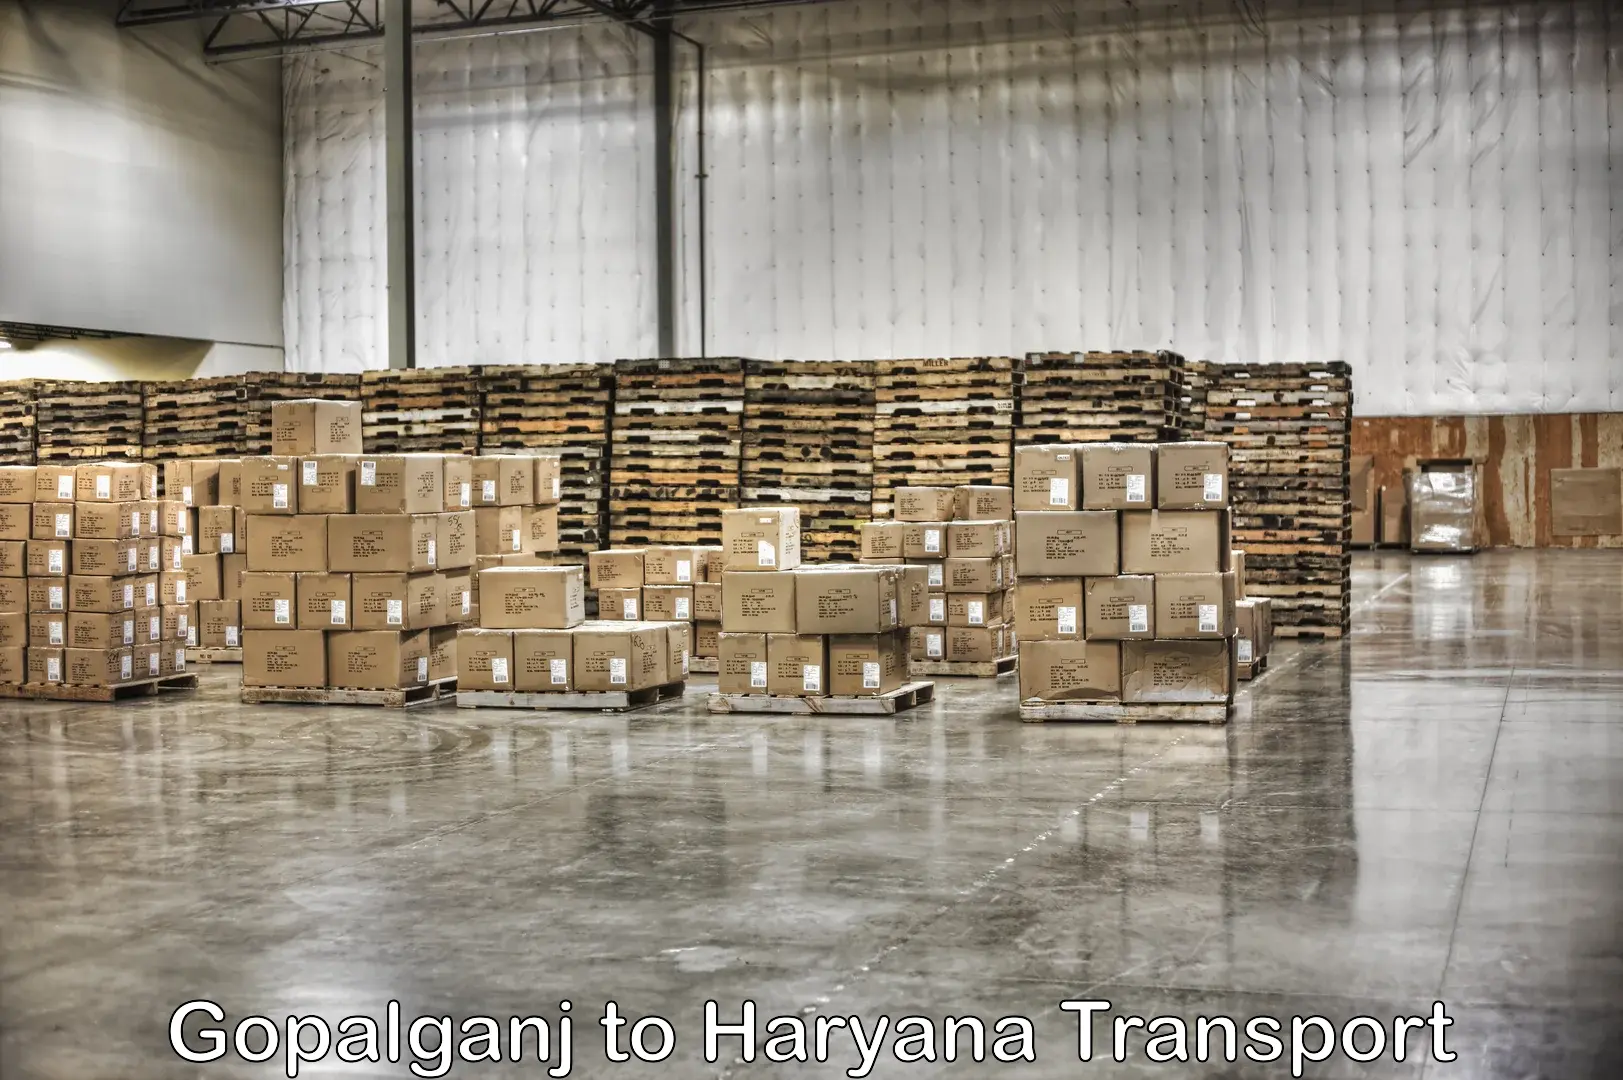 Daily parcel service transport Gopalganj to IIIT Sonepat